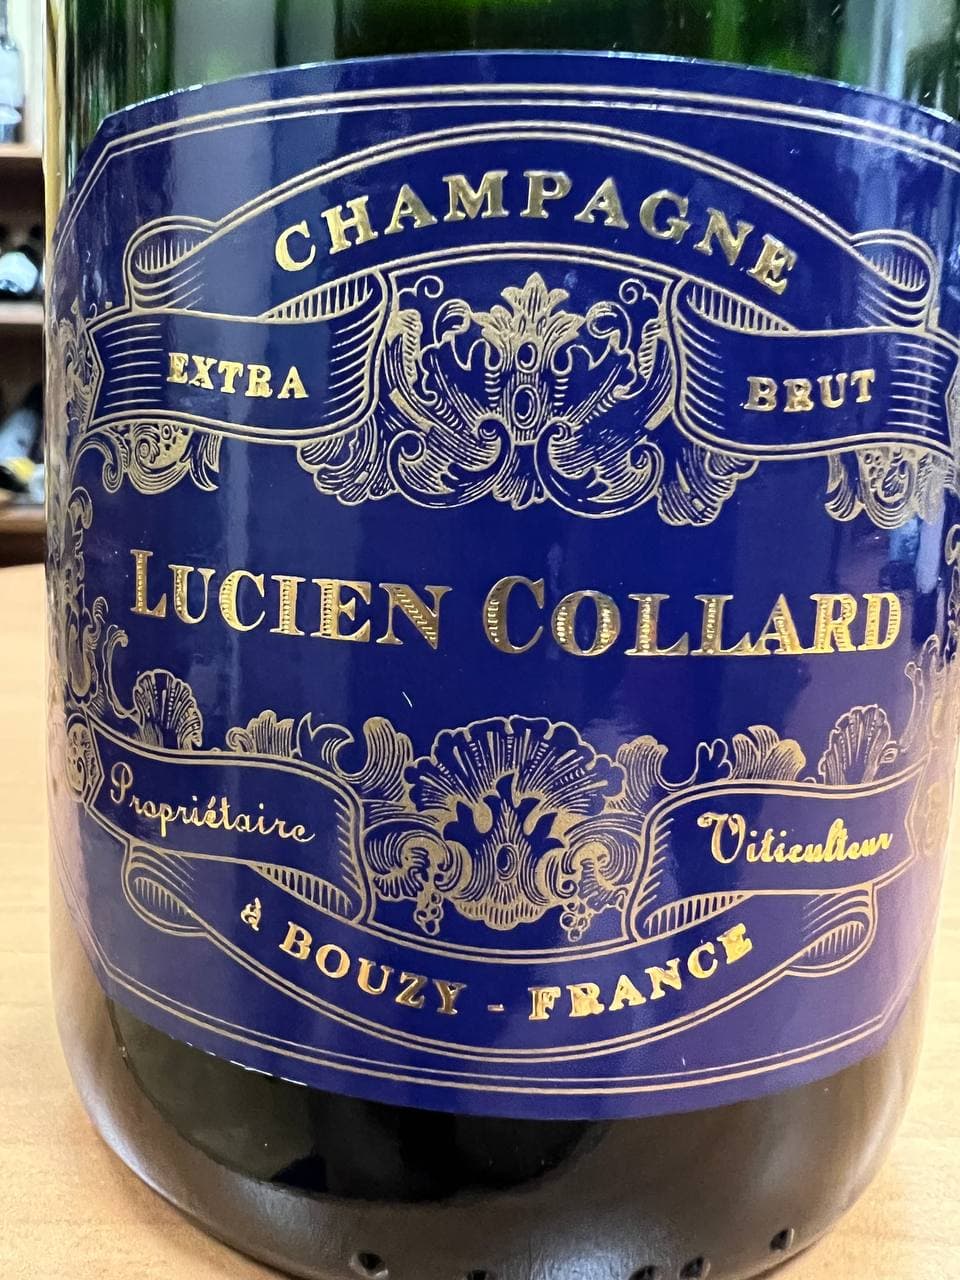 Champagne Grand Cru Lucien Collard